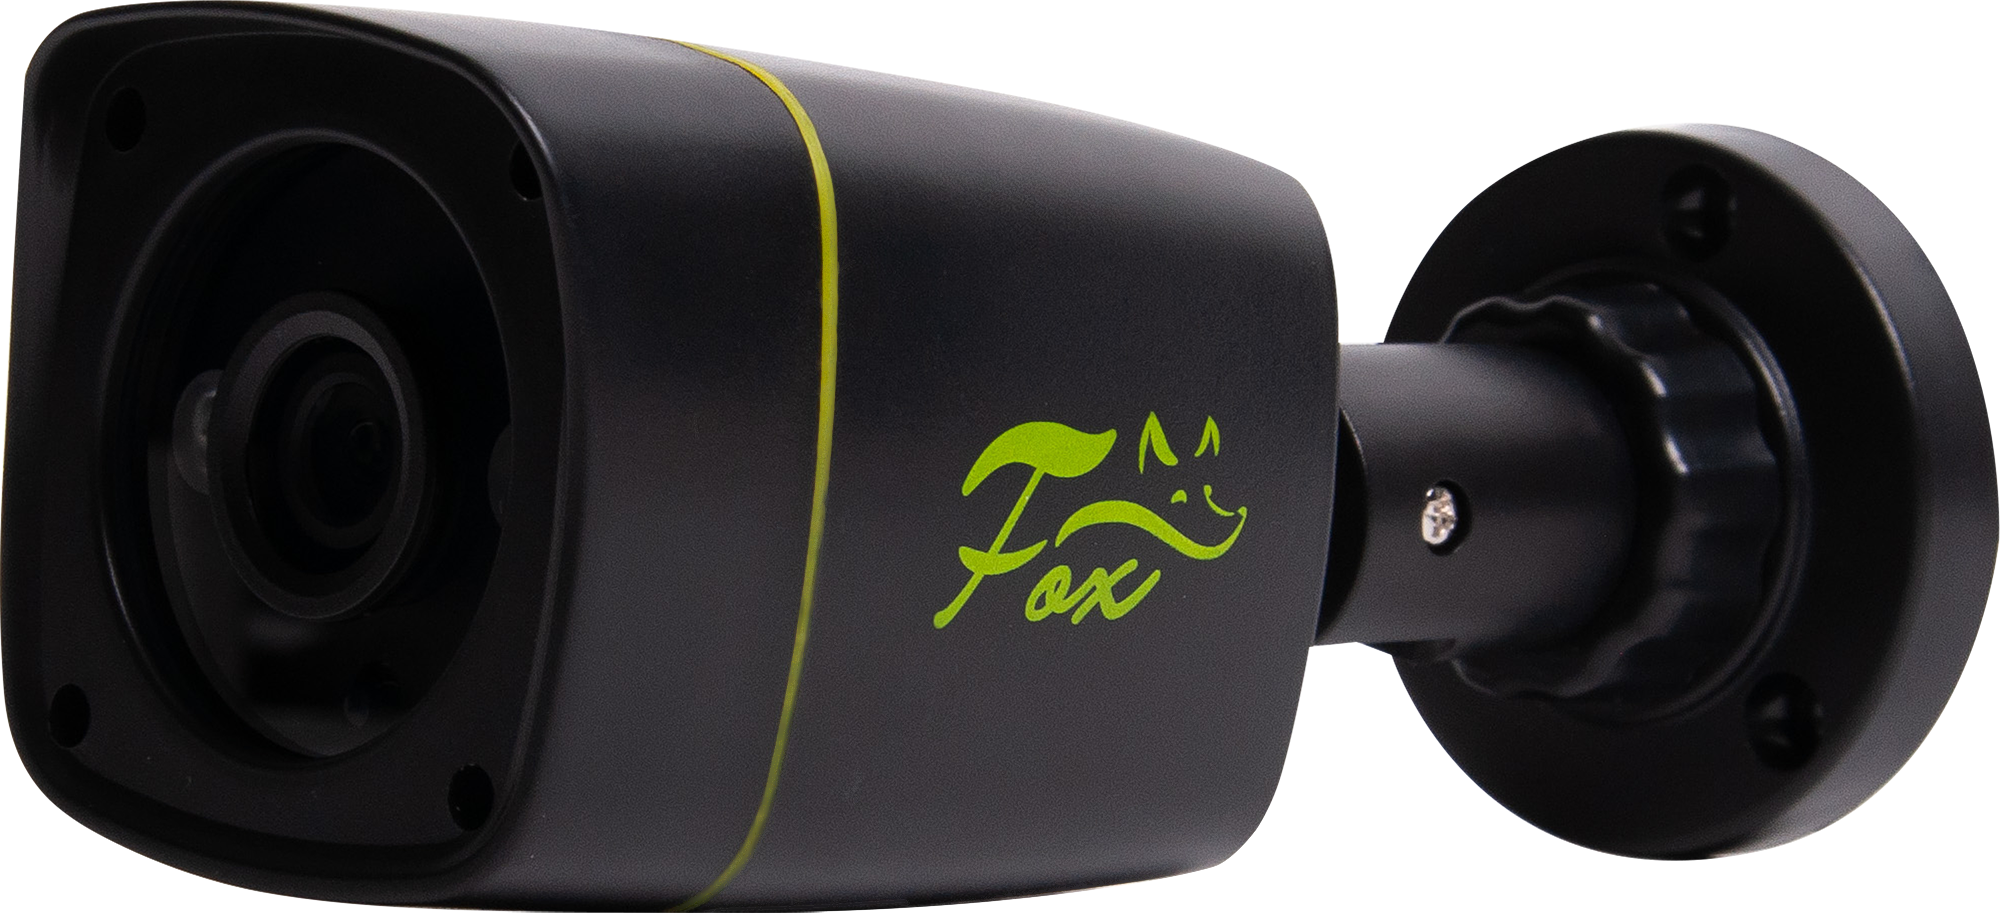 Комплект для видеонаблюдения Fox FX-KB 2 МП 1 камера цвет черный. Fox FX-kb2. Fox видеонаблюдение